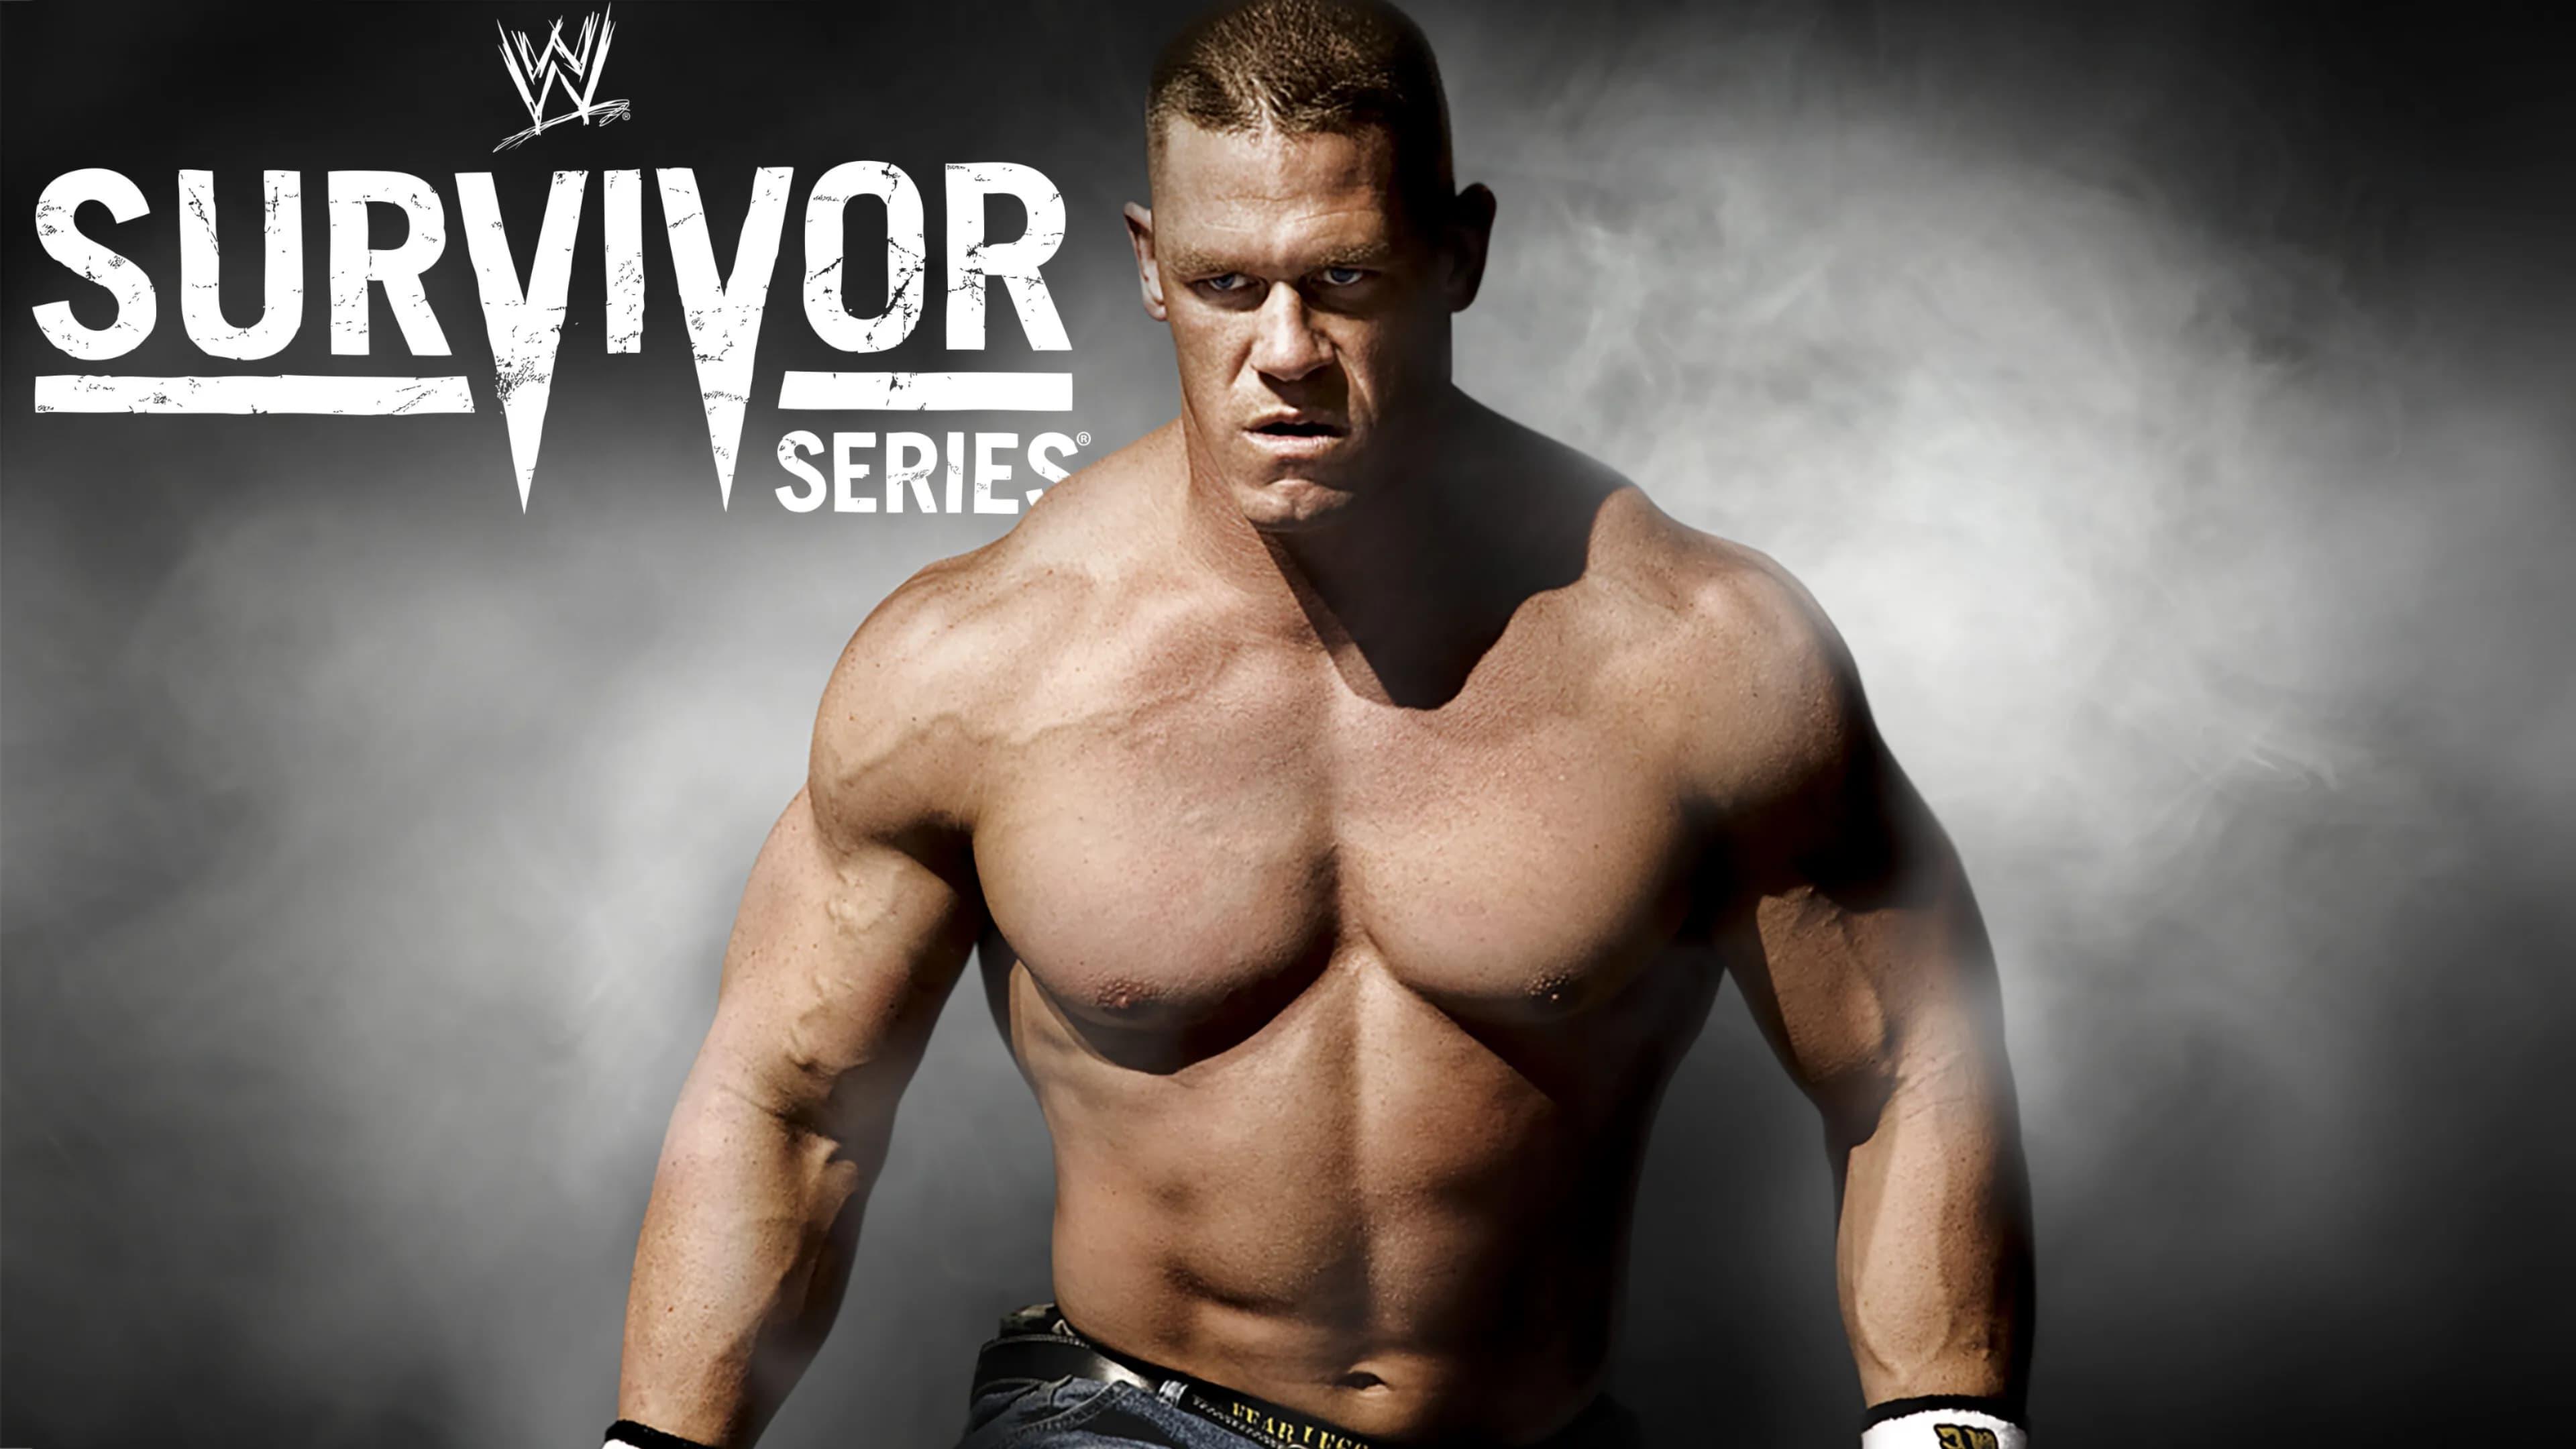 WWE Survivor Series 2008 backdrop